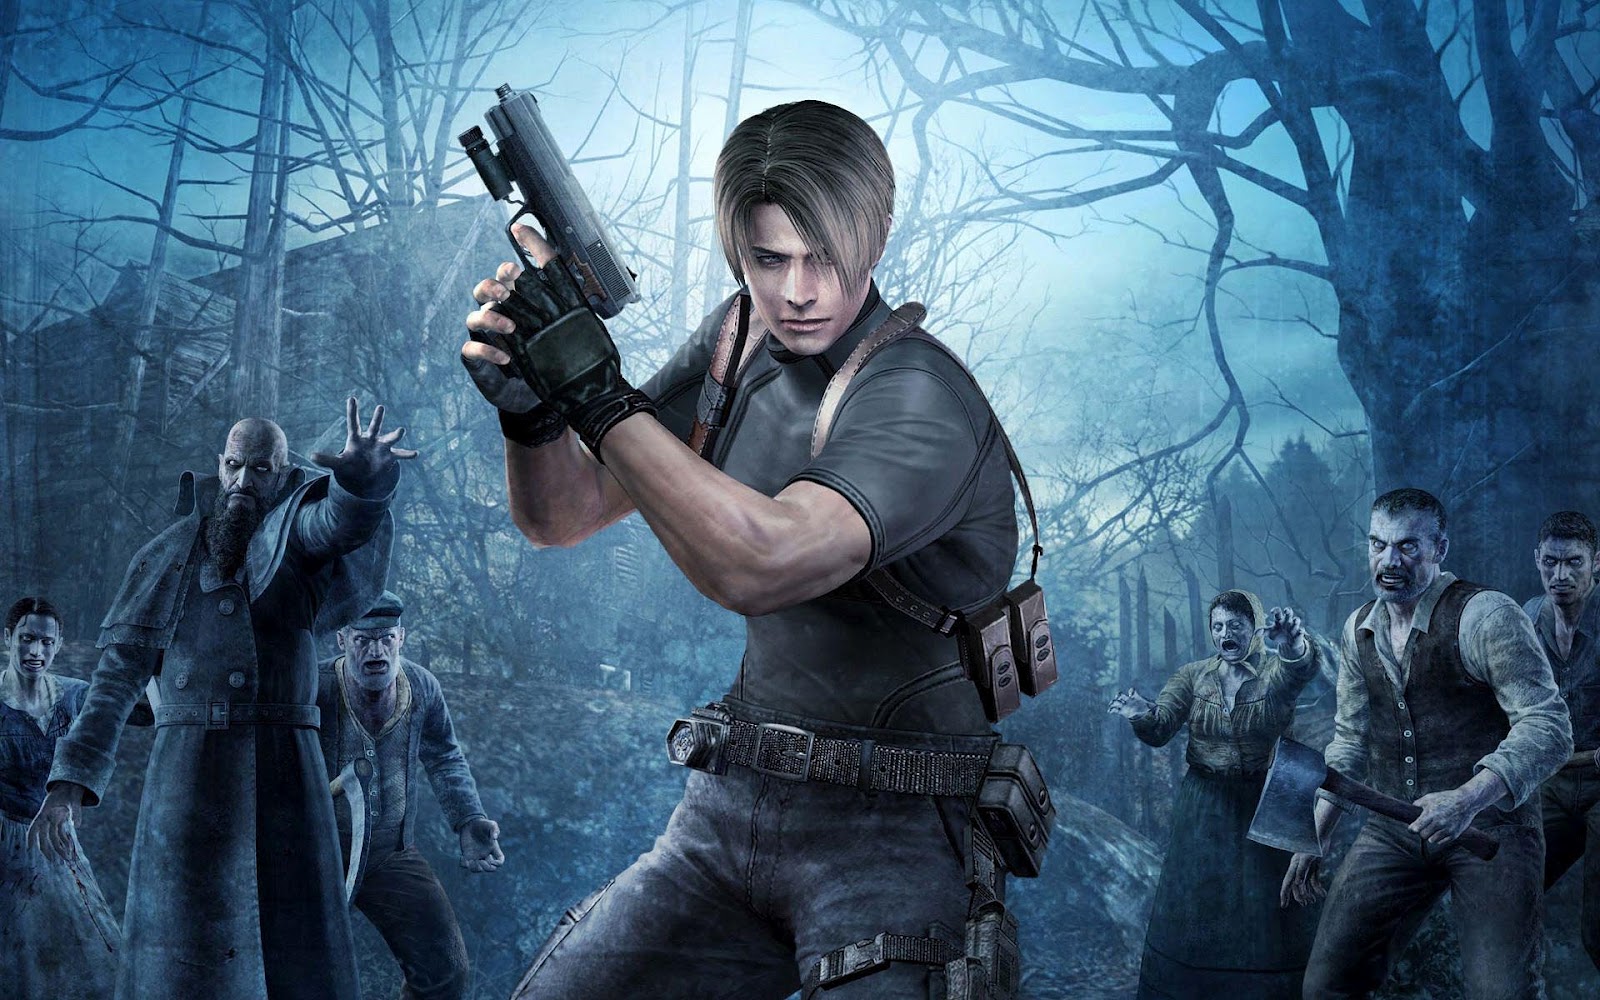 6 jogos de terror do PS4 para você jogar nesta sexta-feira 13